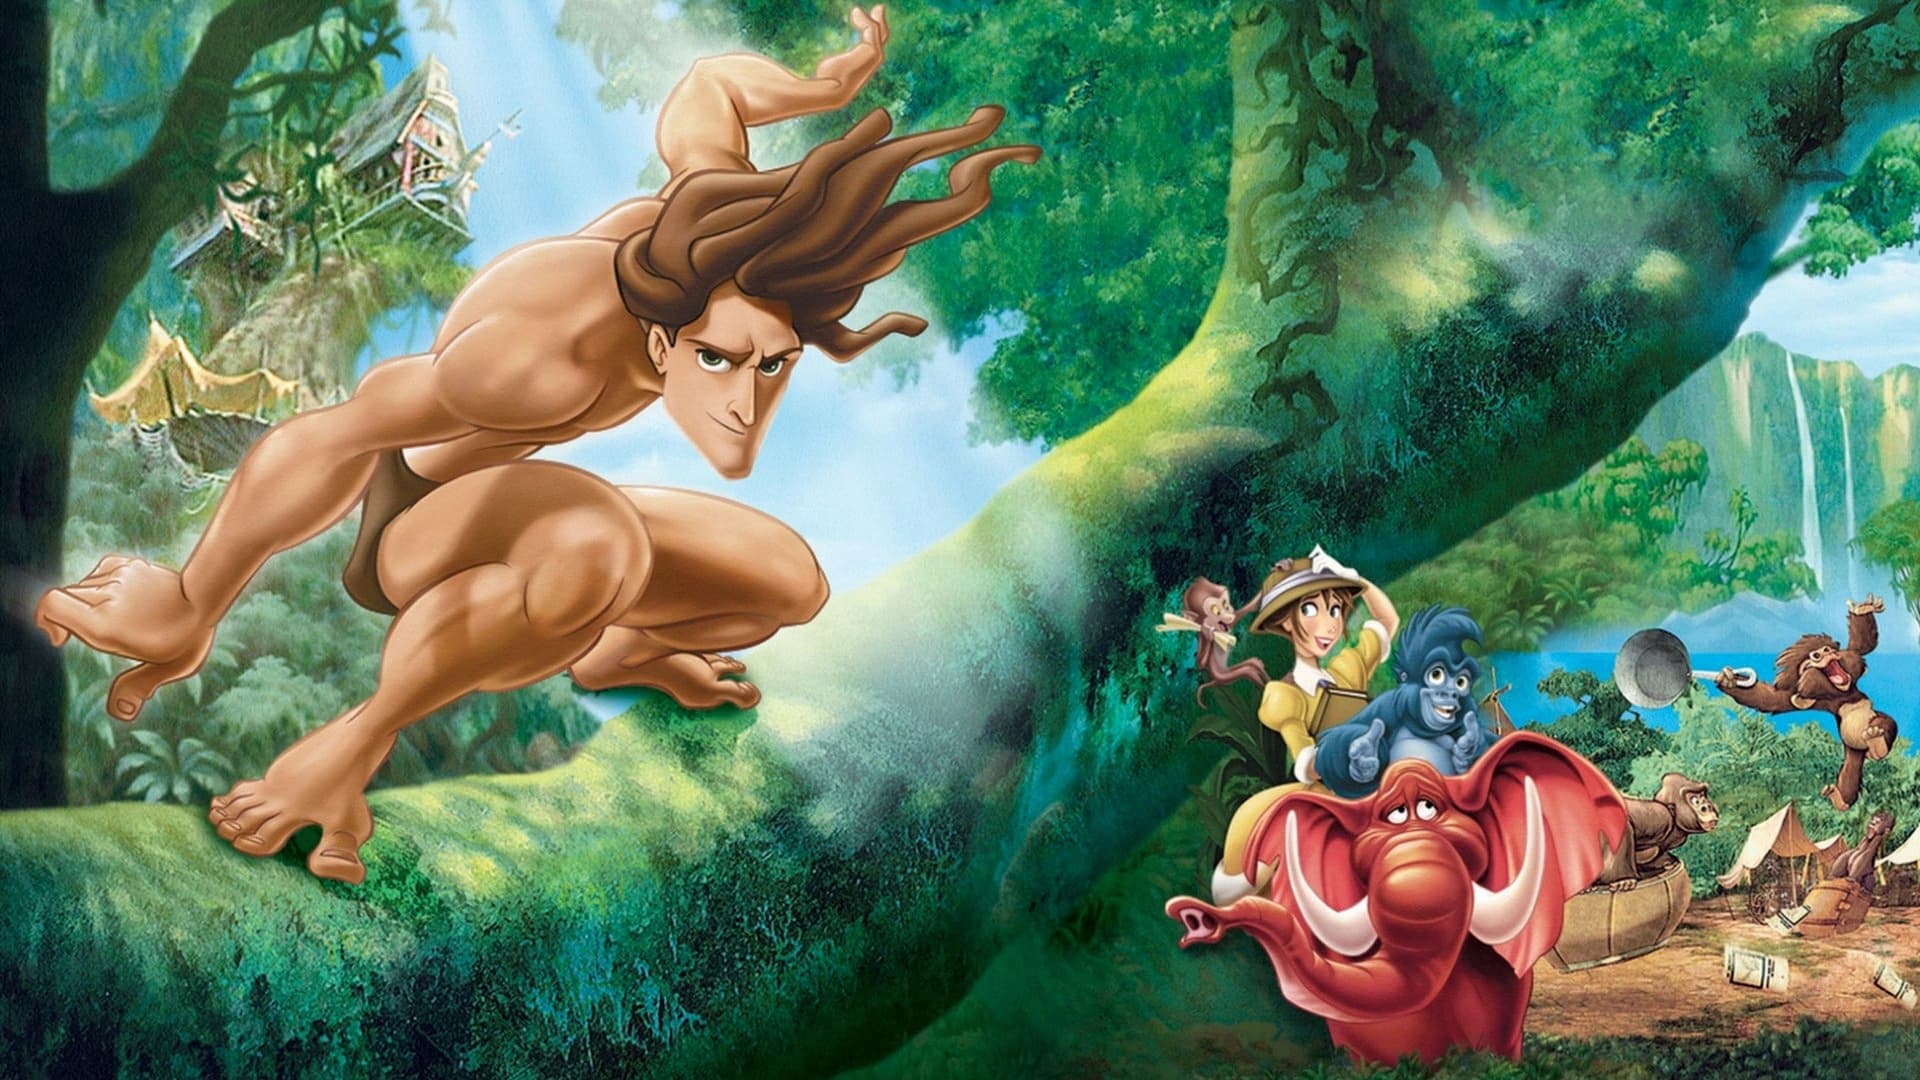 Cậu Bé Rừng Xanh - Tarzan